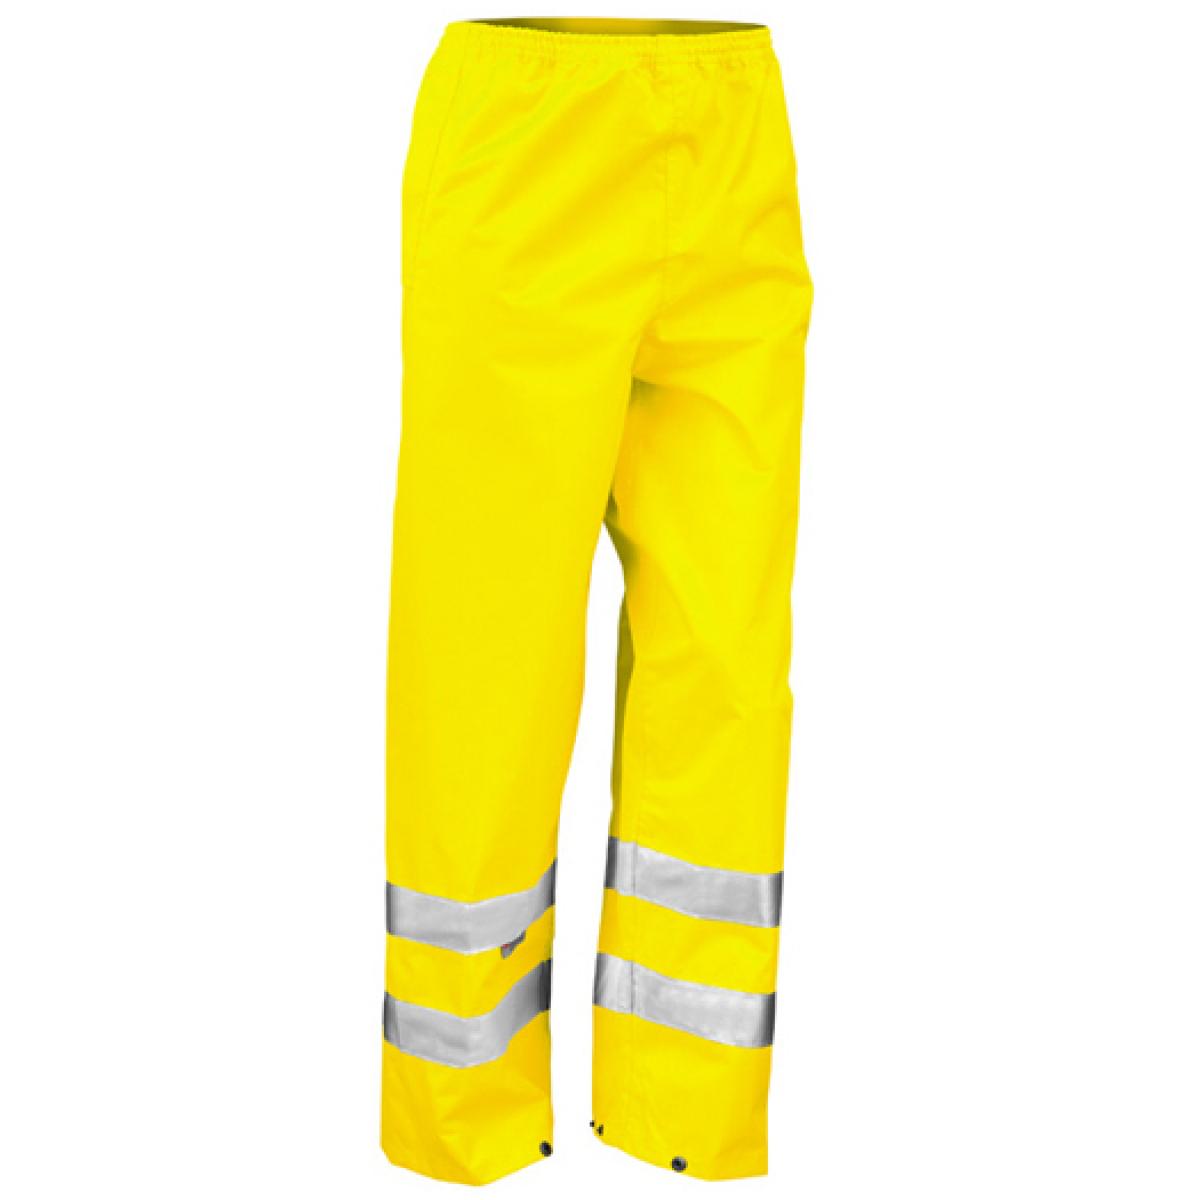 Hersteller: Result Herstellernummer: R022X Artikelbezeichnung: Herren Safety Hi-Viz Trouser / ISOEN20471:2013 Farbe: Fluorescent Yellow